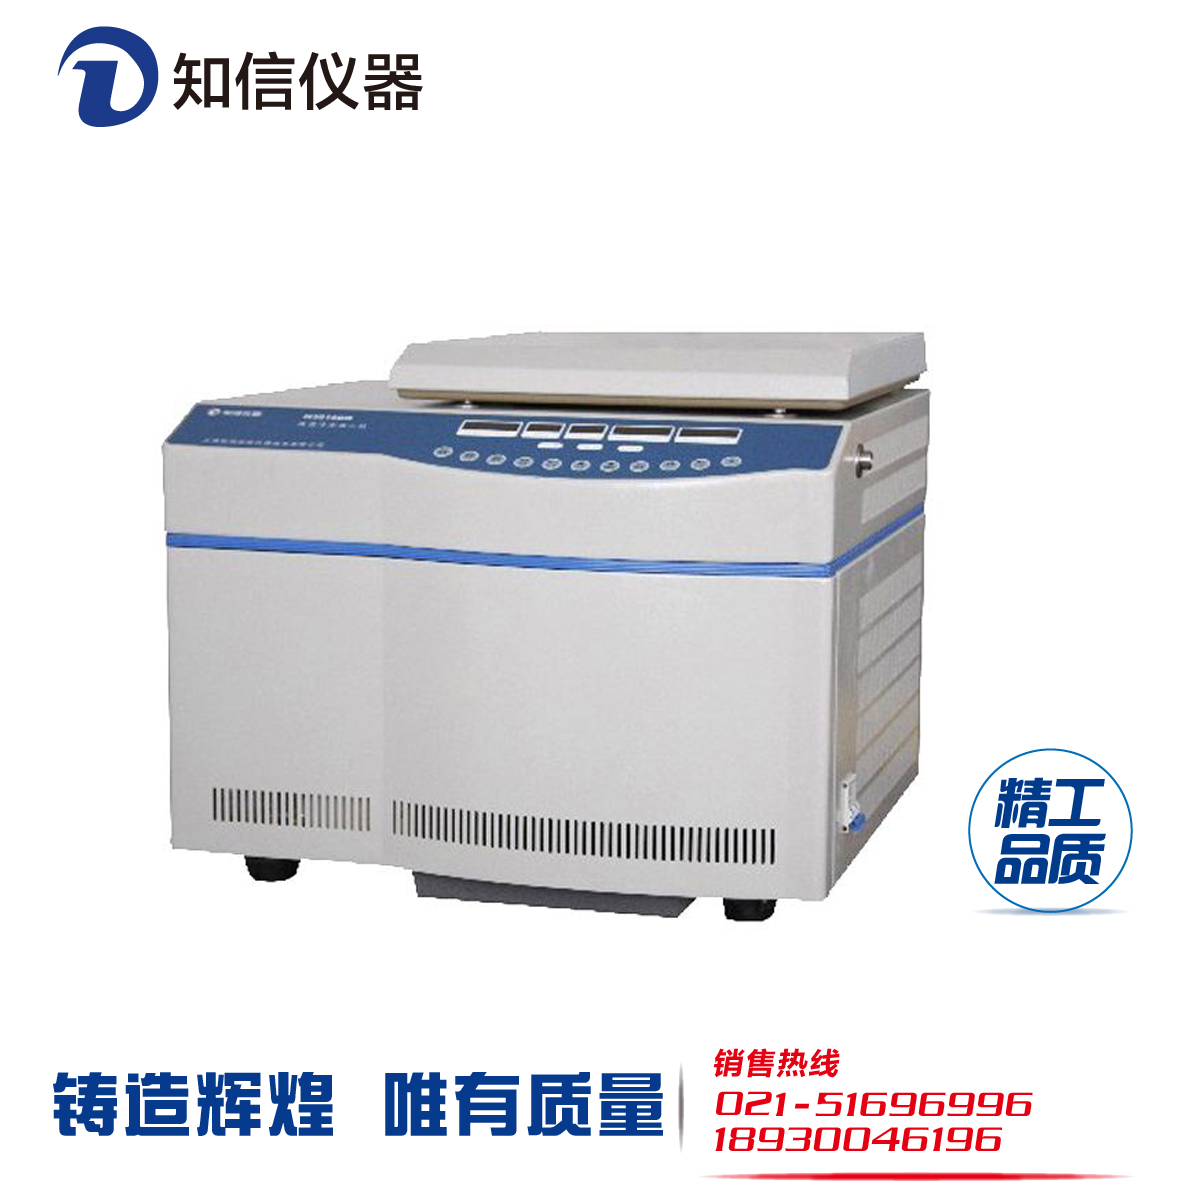 供应上海知信H3018DR台式高速冷冻离心机图片